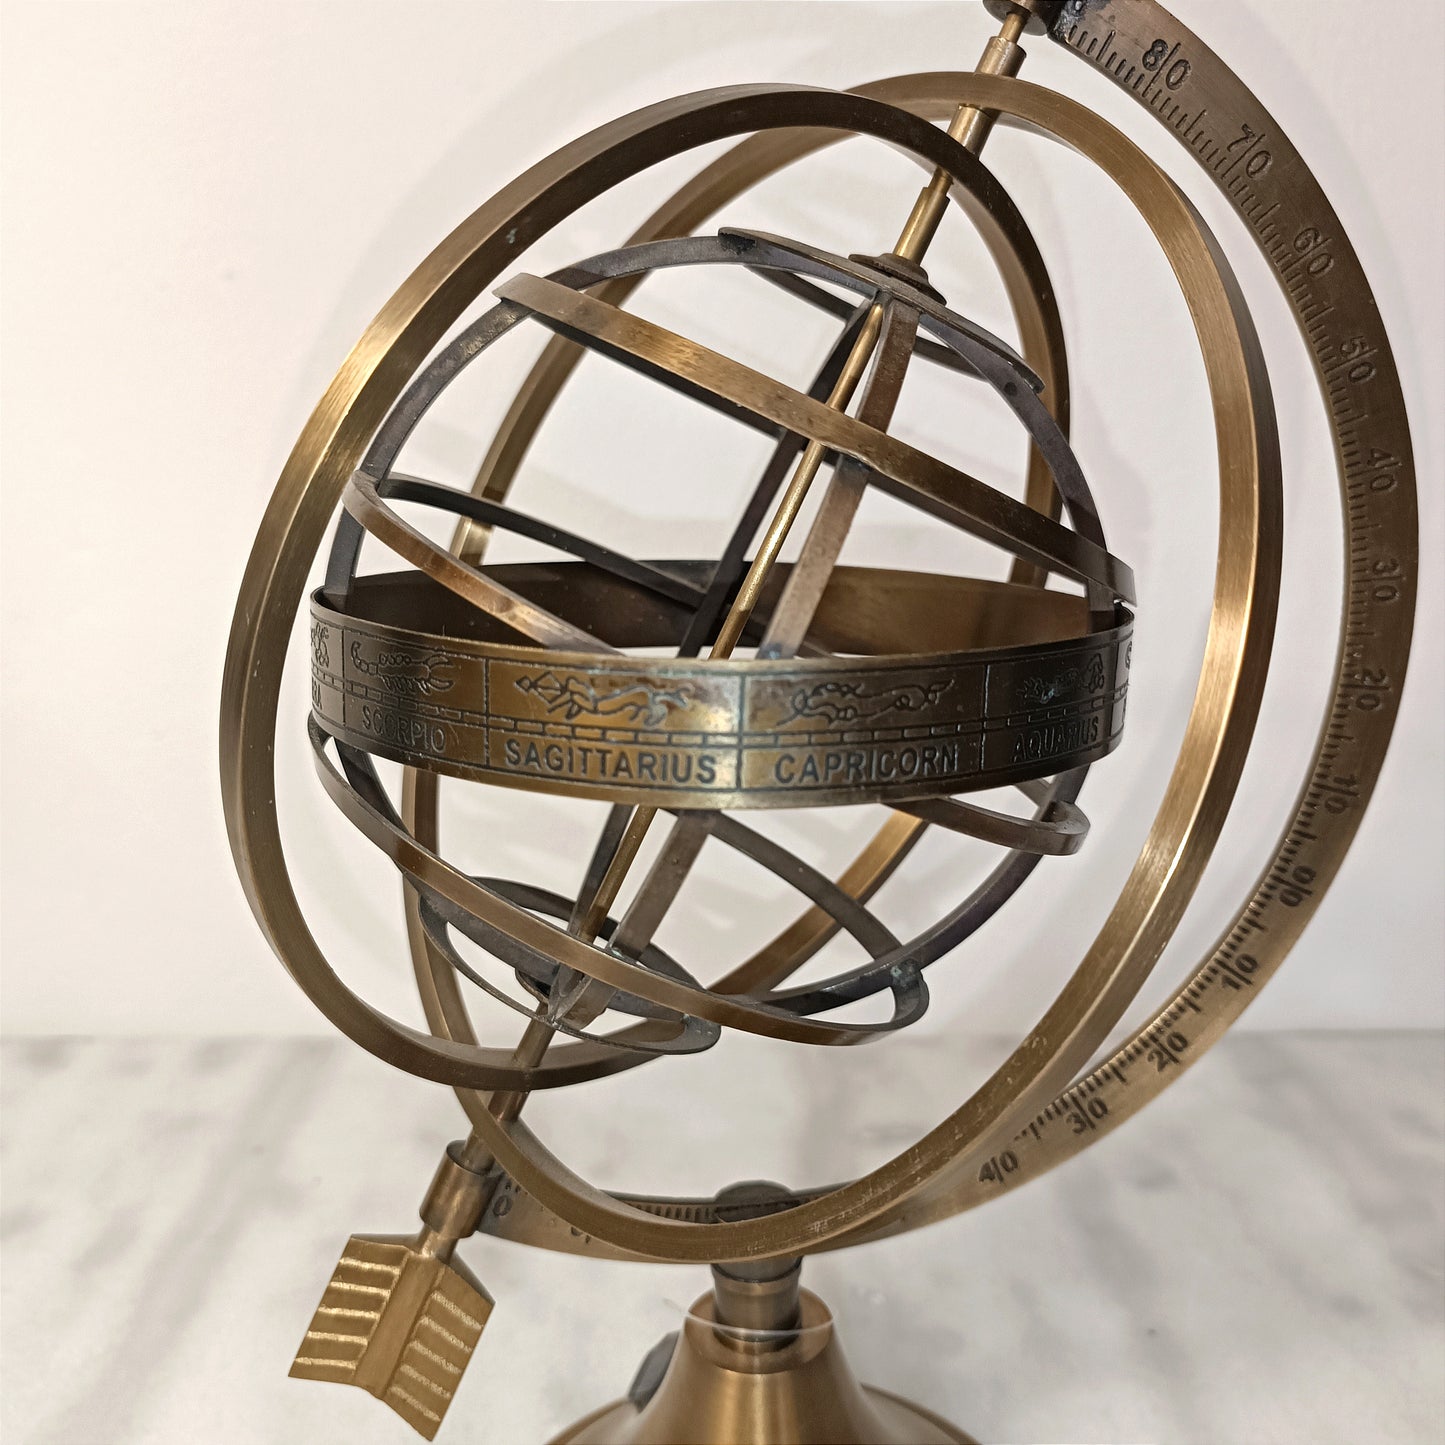 Brass globe with arrow